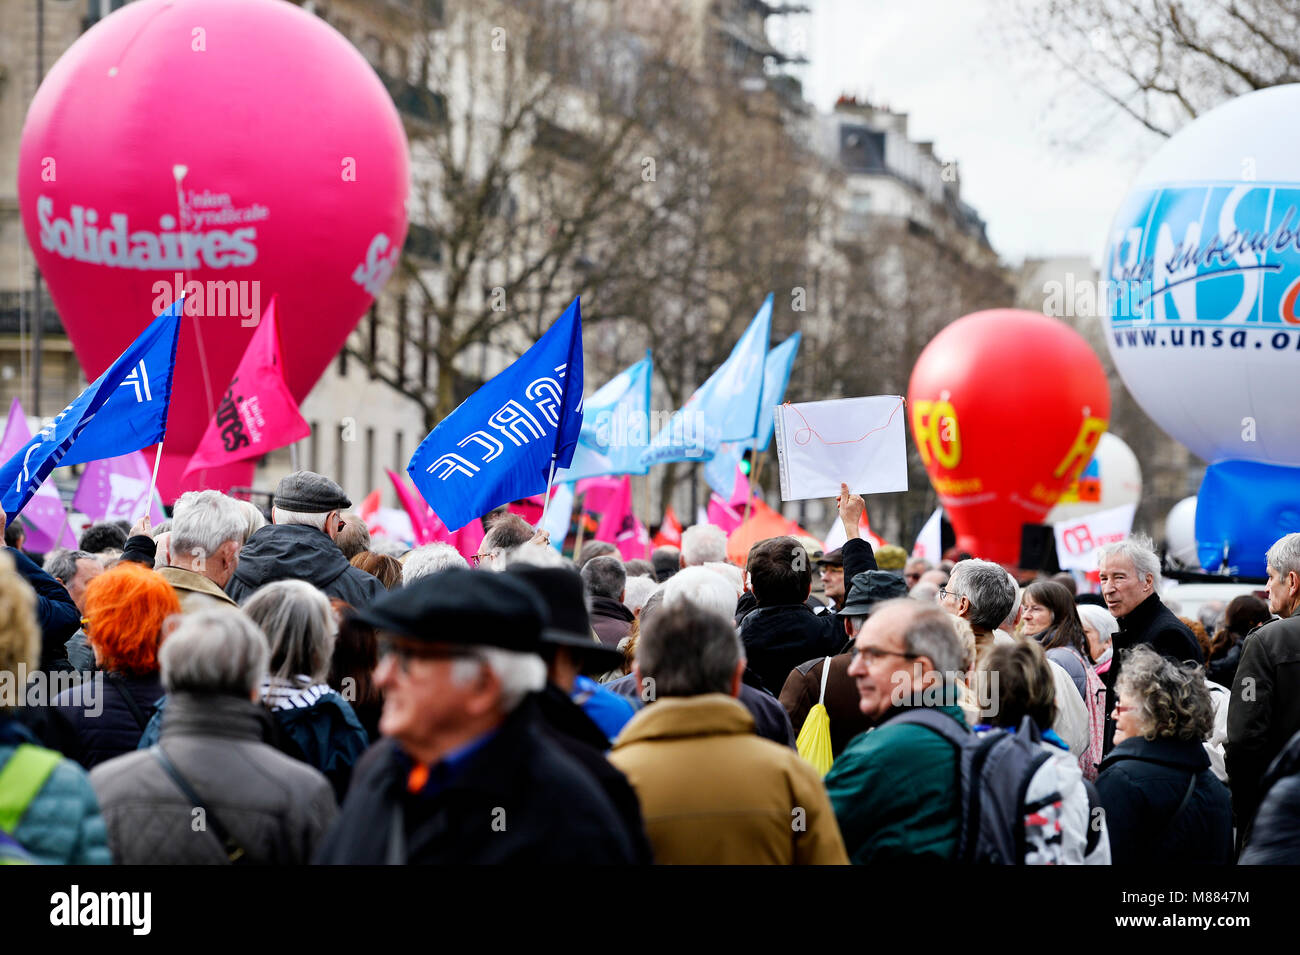 Montparnasse, Paris, France 15 mars 2018. Les travailleurs retraités protester contre l'augmentation des cotisations de sécurité sociale sur les retraites faibles (CSG). Crédit : Frédéric VIELCANET/Alamy Live News Banque D'Images